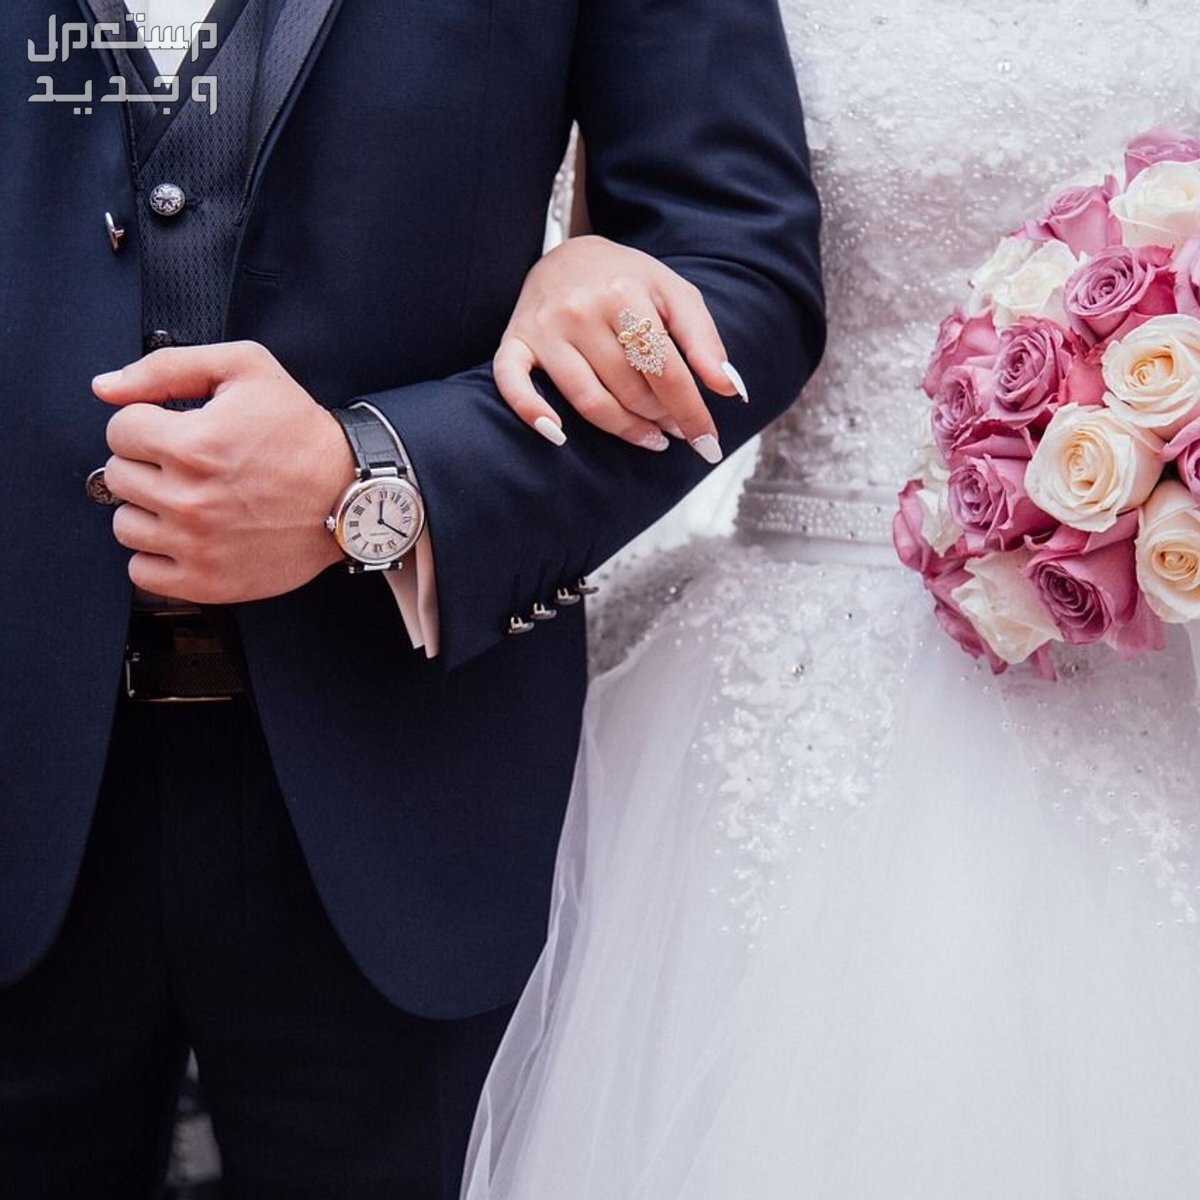 تفسير حلم شراء فستان زفاف للمتزوجة والعزباء في مصر تفسير حلم شراء فستان زفاف للمتزوجة